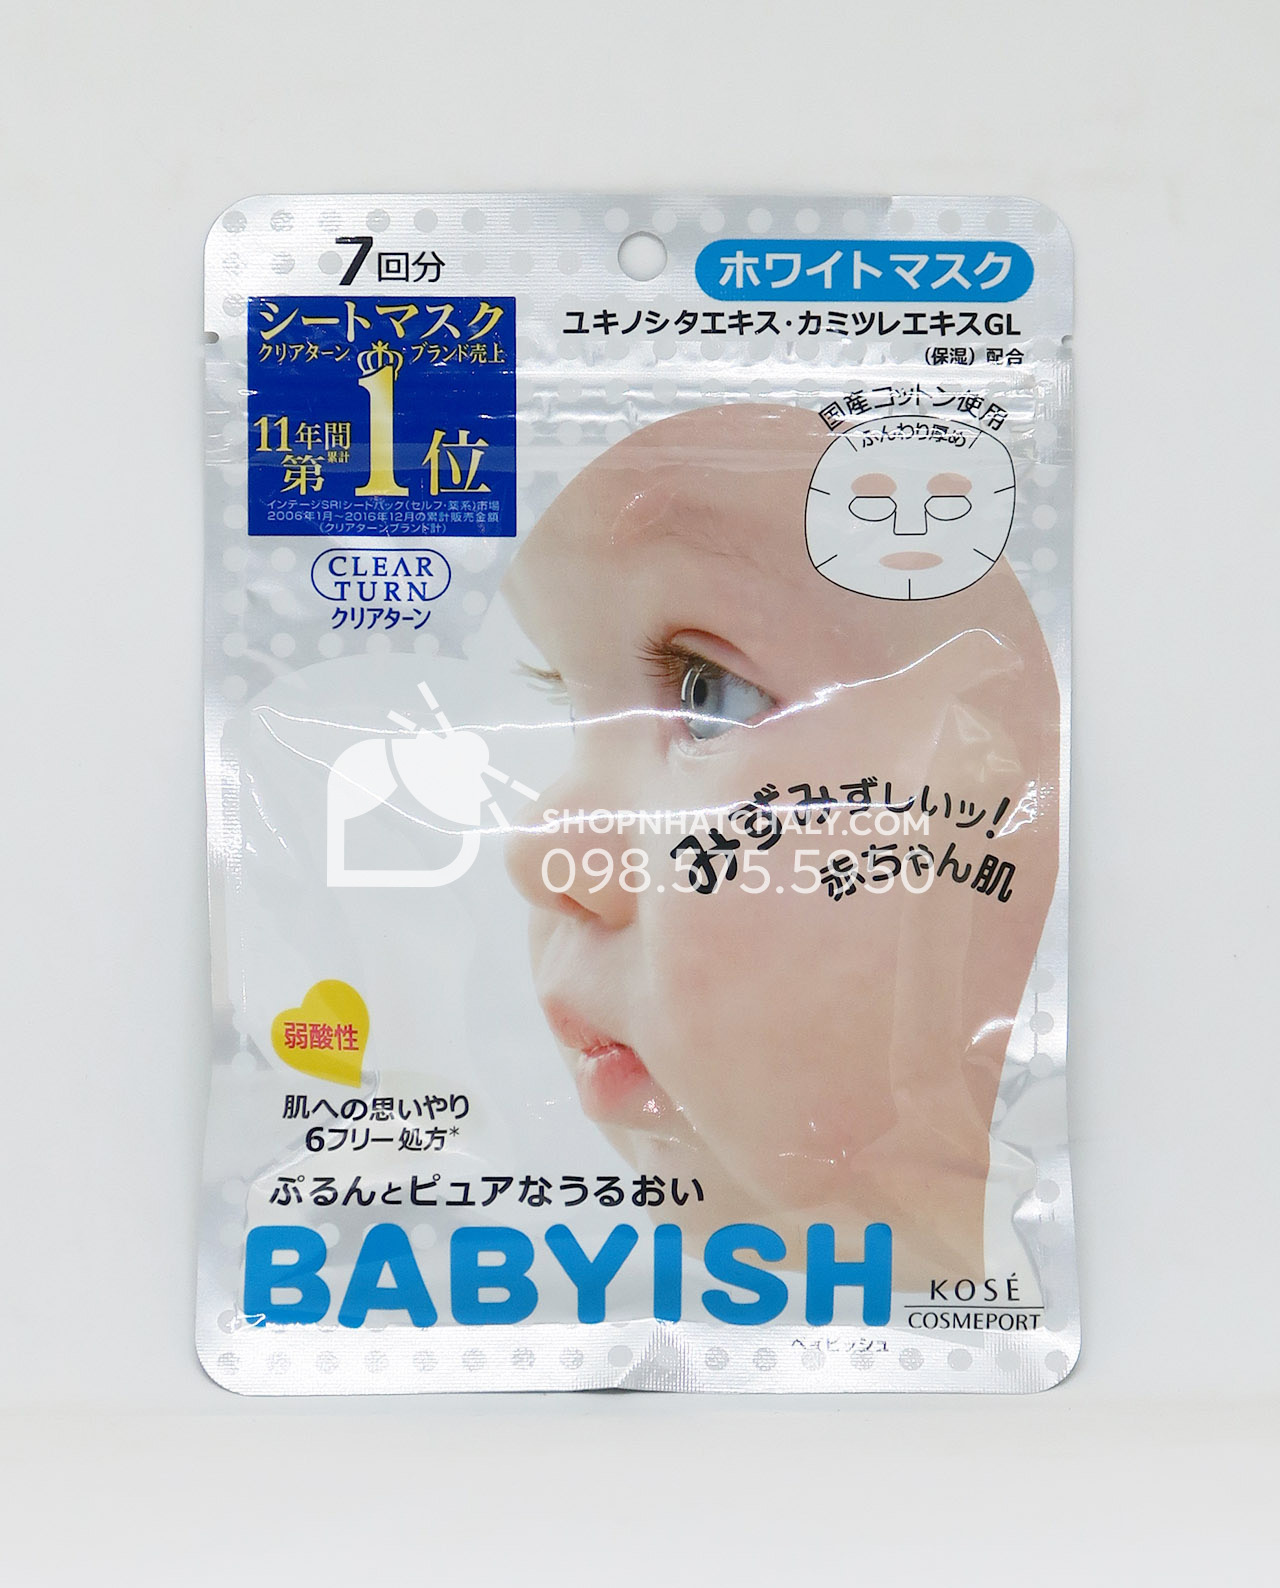 Miếng mặt nạ Kose cosmeport Babyish mask màu trắng là dòng bán chạy thứ 2 trong các loại mask Babyish của Nhật